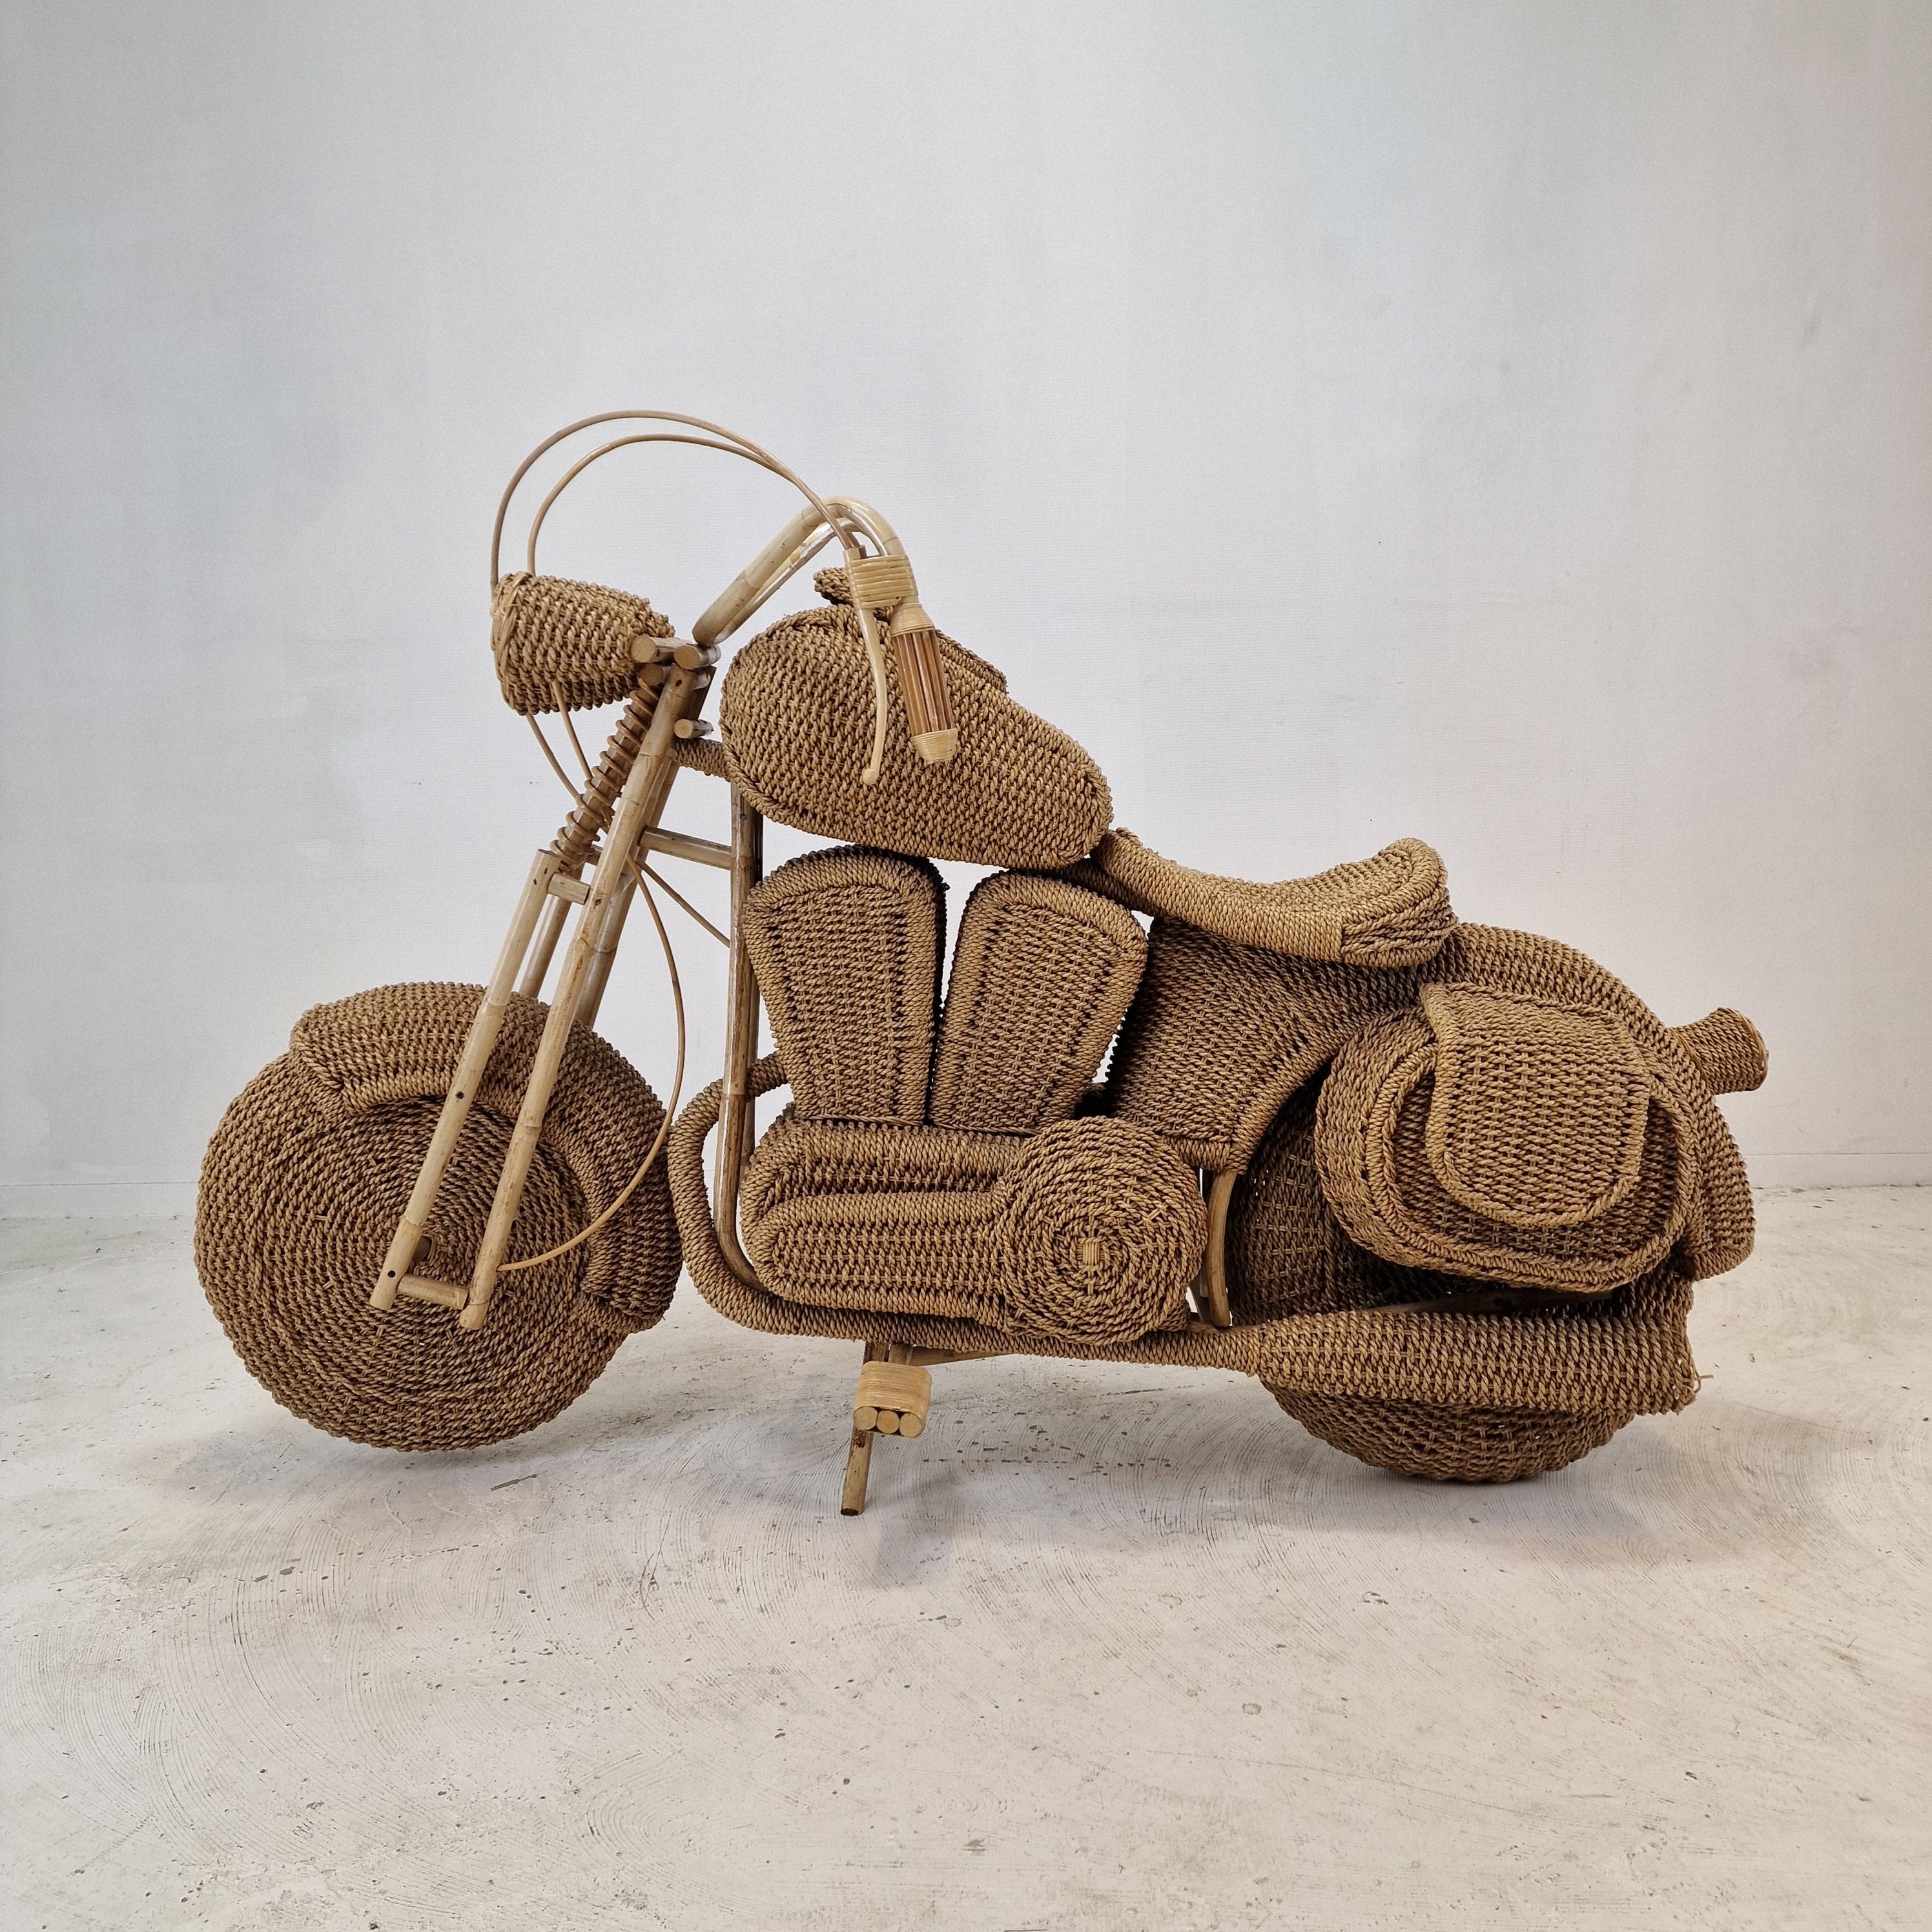 Lebensgroßes Harley Davidson Rattanmodell eines Motorrads, zugeschrieben Tom Dixon USA, CIRCA 1980er Jahre  

Handgefertigte Skulptur eines Motorrads aus geflochtenem Rattan, Weide, Schilf und Holz. 

Dieses Modell wurde Berichten zufolge in den